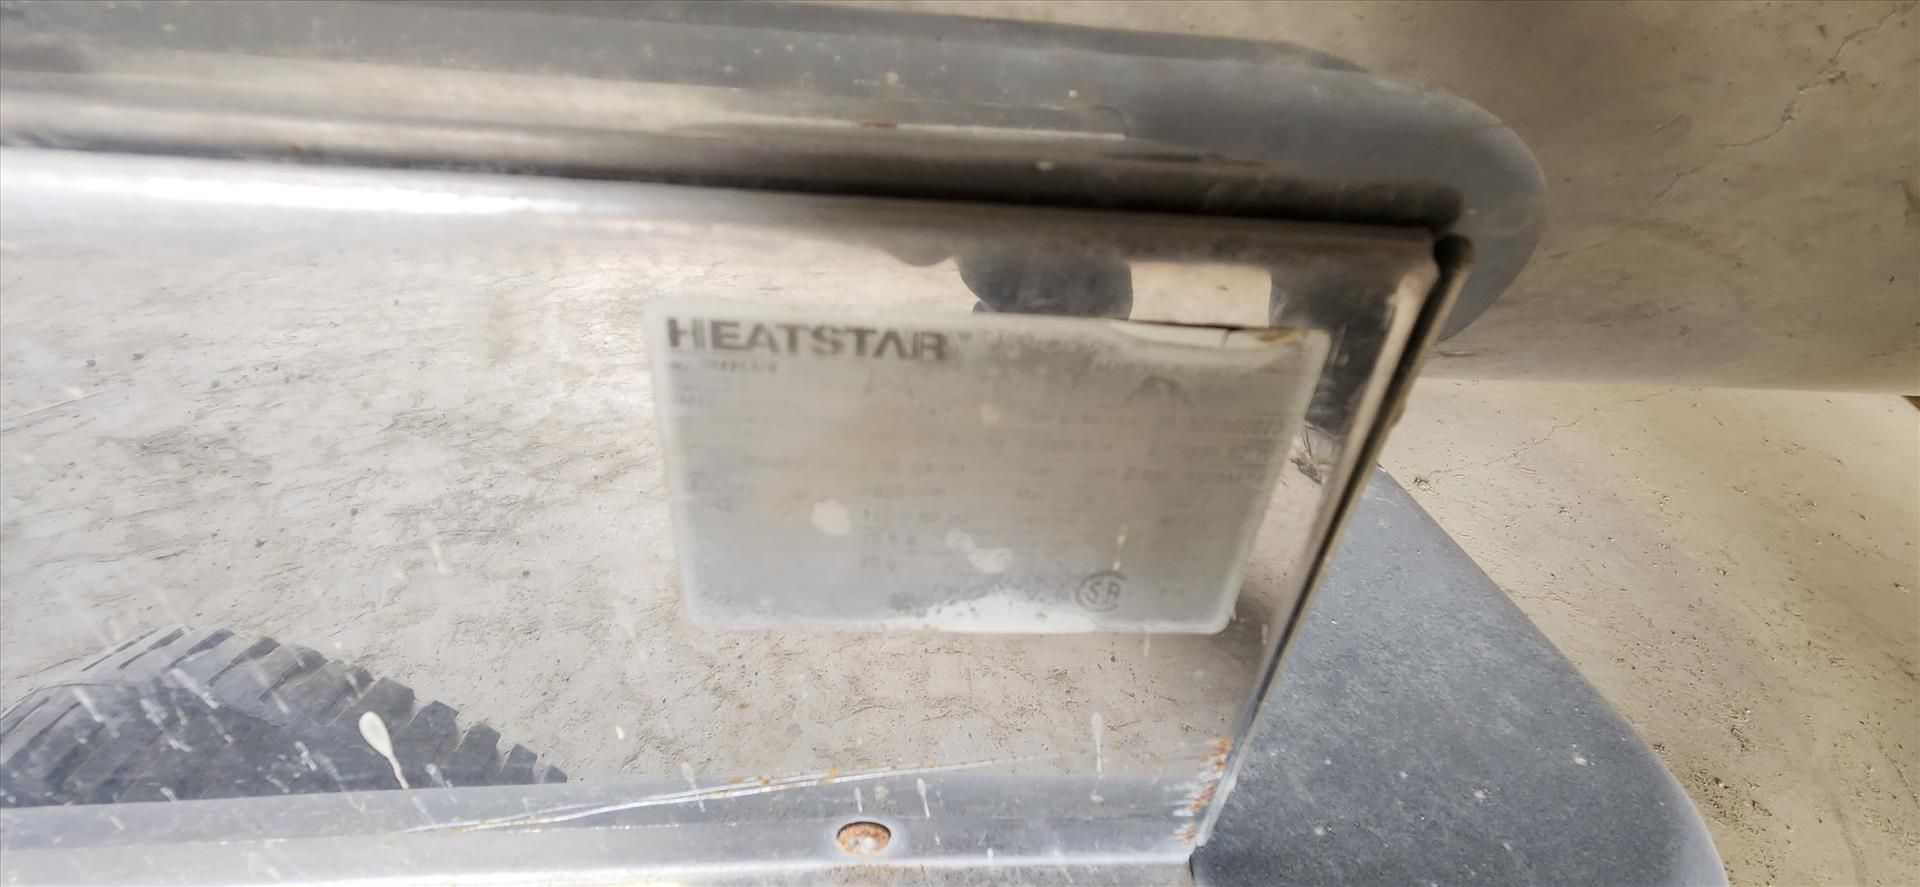 Stal heat canon, mod. HeatStar HS400KT, diesel/kerosene, 395500 btu/hr (requires repair) {Day 2} [ - Image 3 of 3